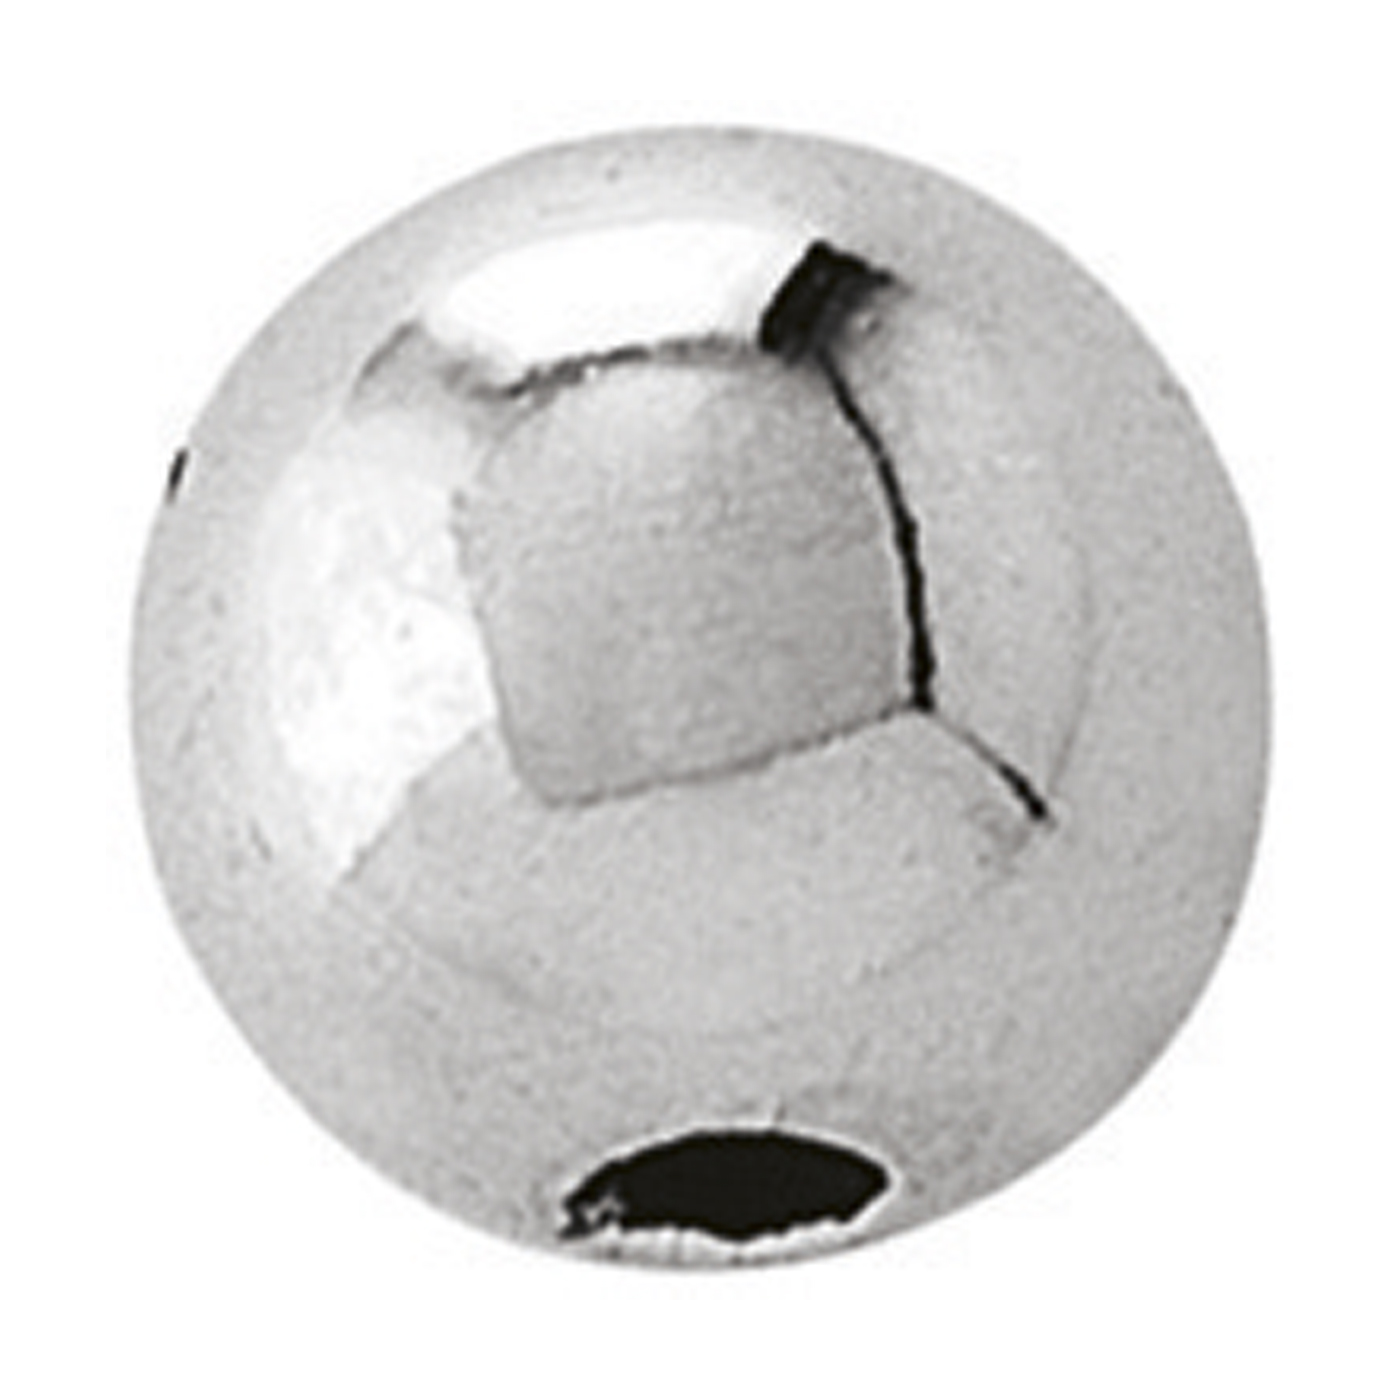 2-Hole Ball, 925Ag Polished, ø 4 mm - 1 piece